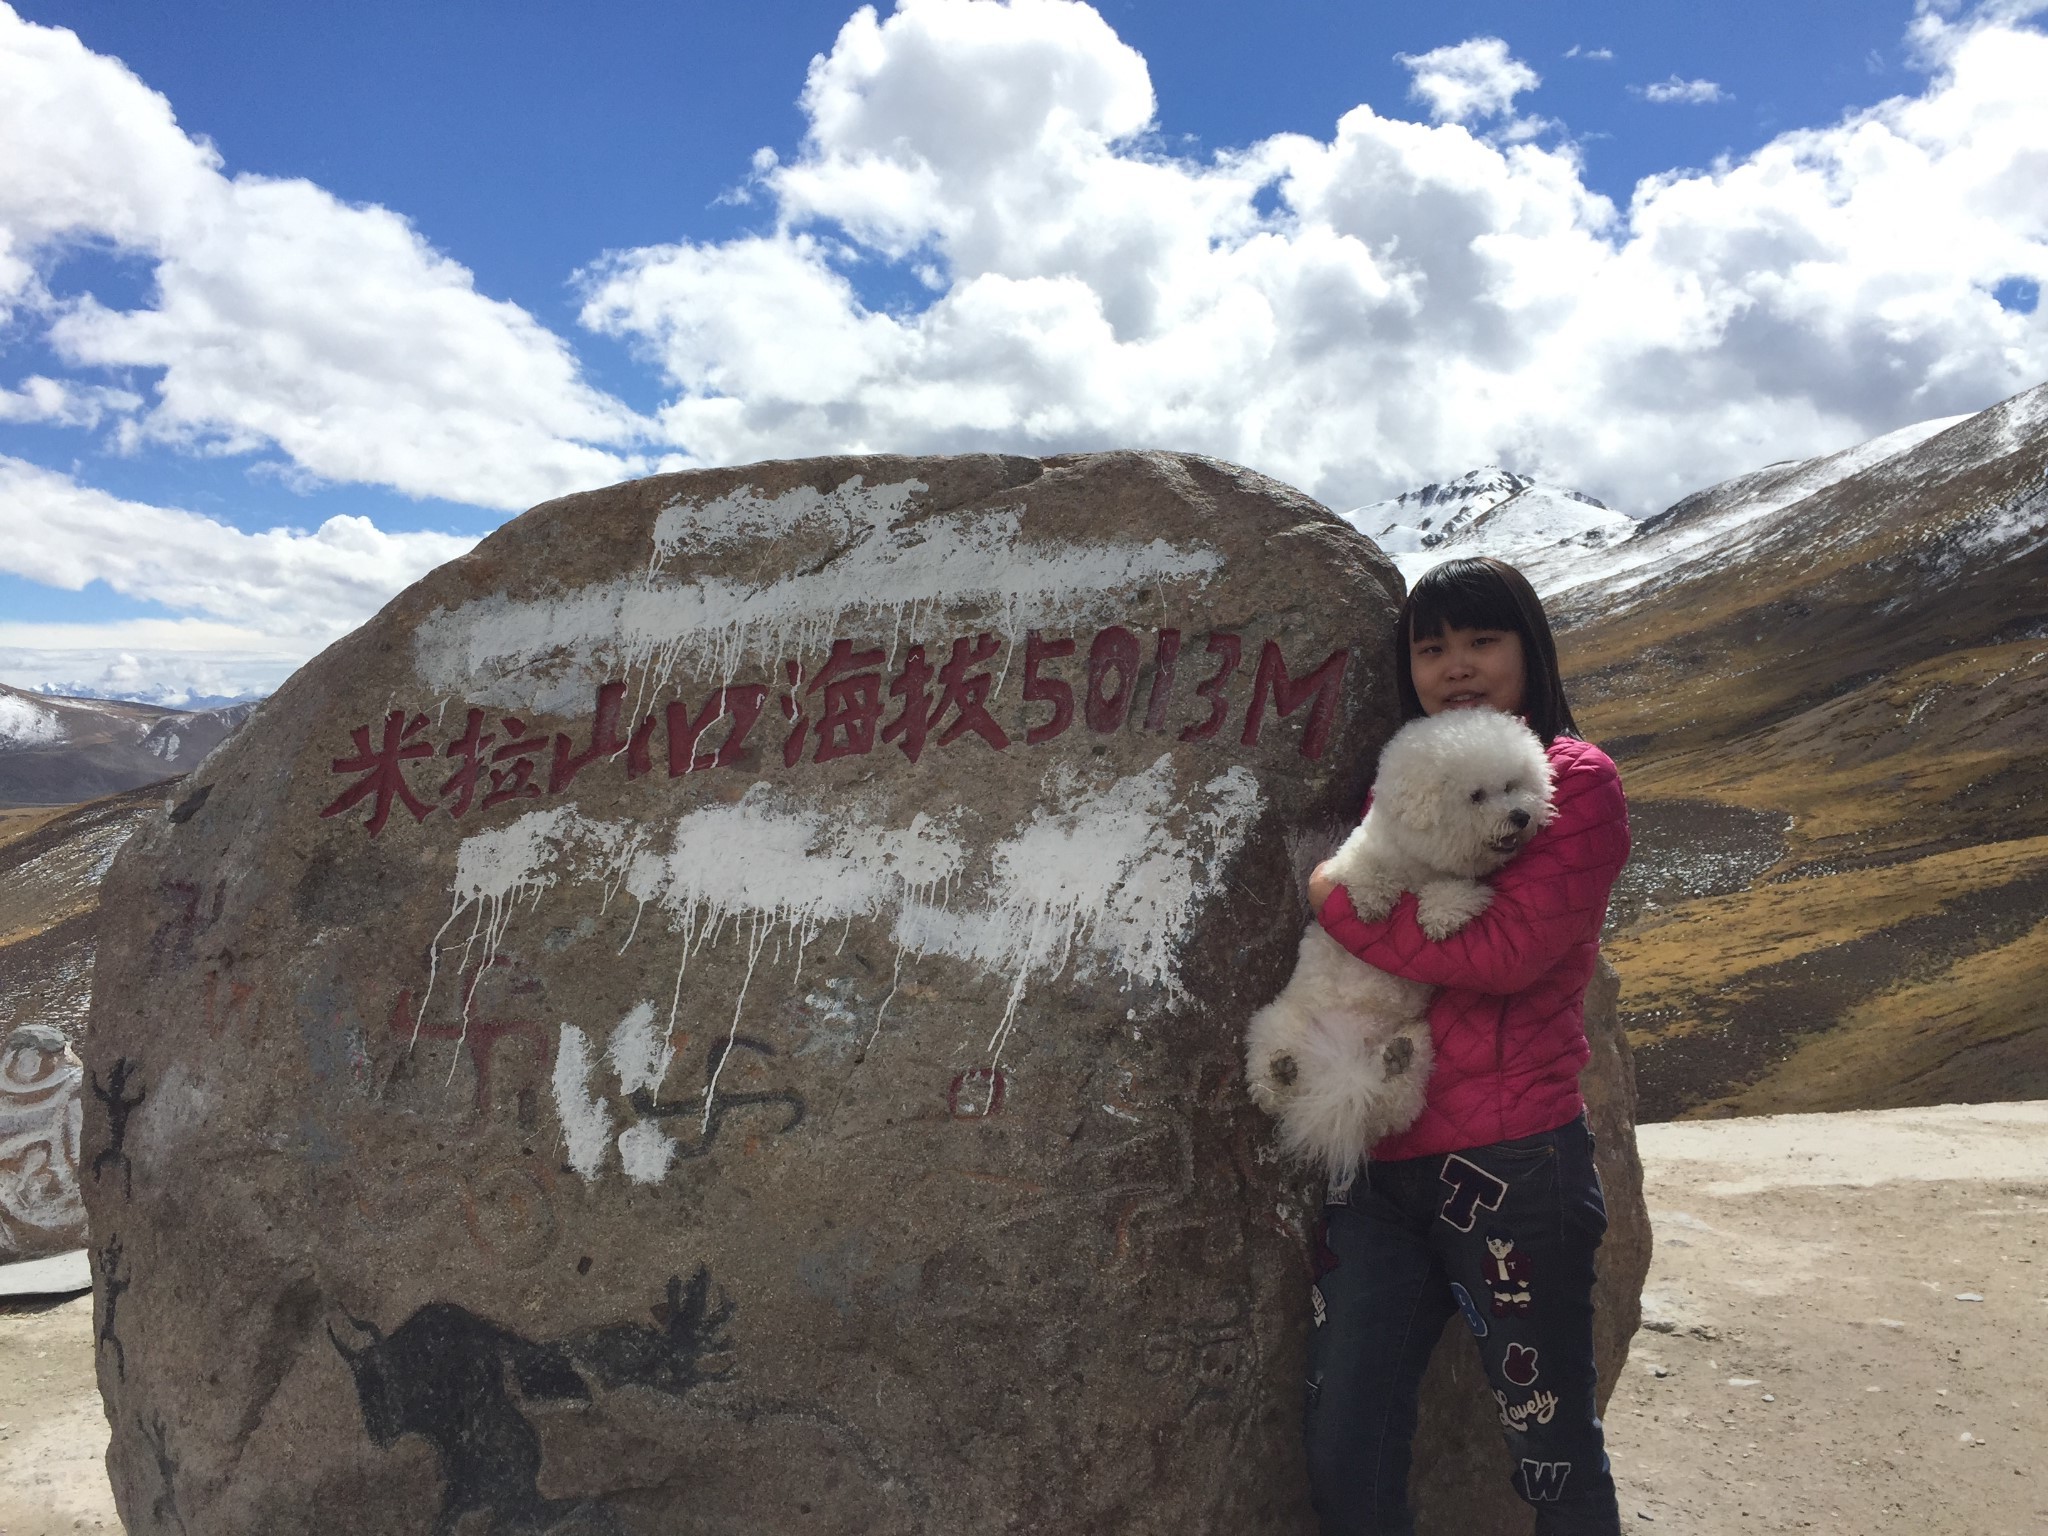 我要去西藏——自驾滇藏线g214国道 川藏线g318国道,一场期待已久的